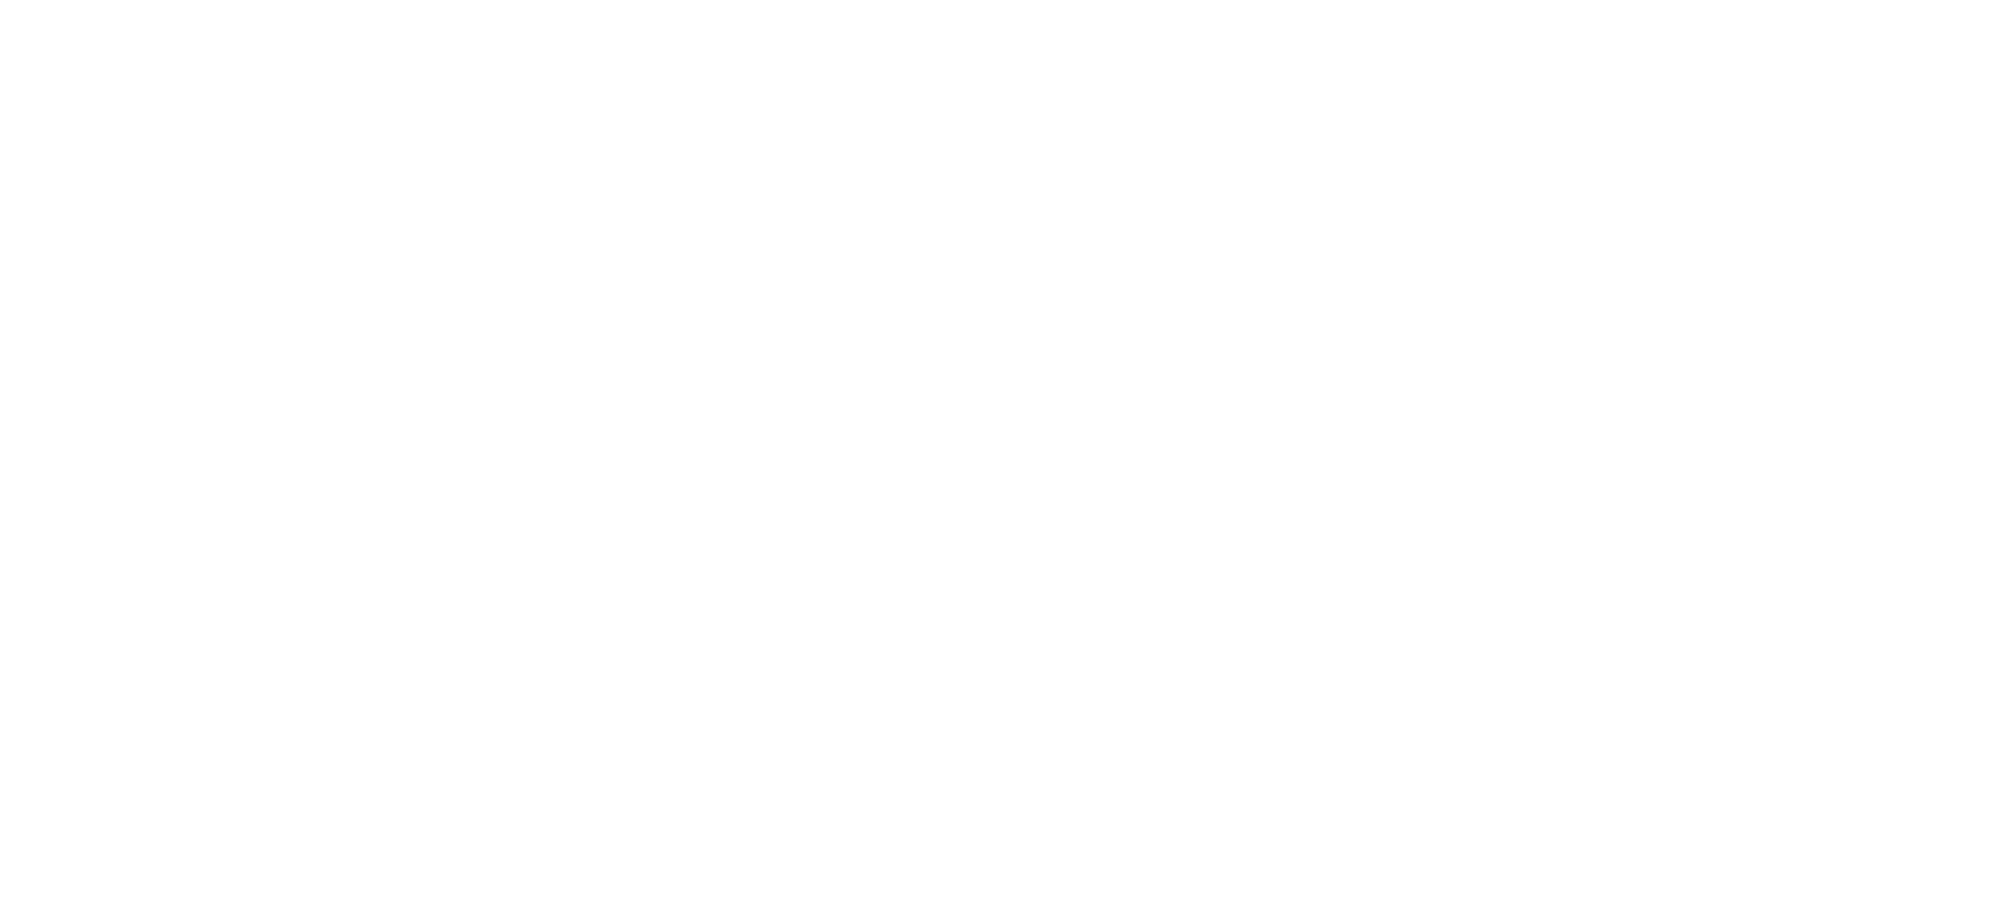 Logo Wilhelm Schetter GmbH